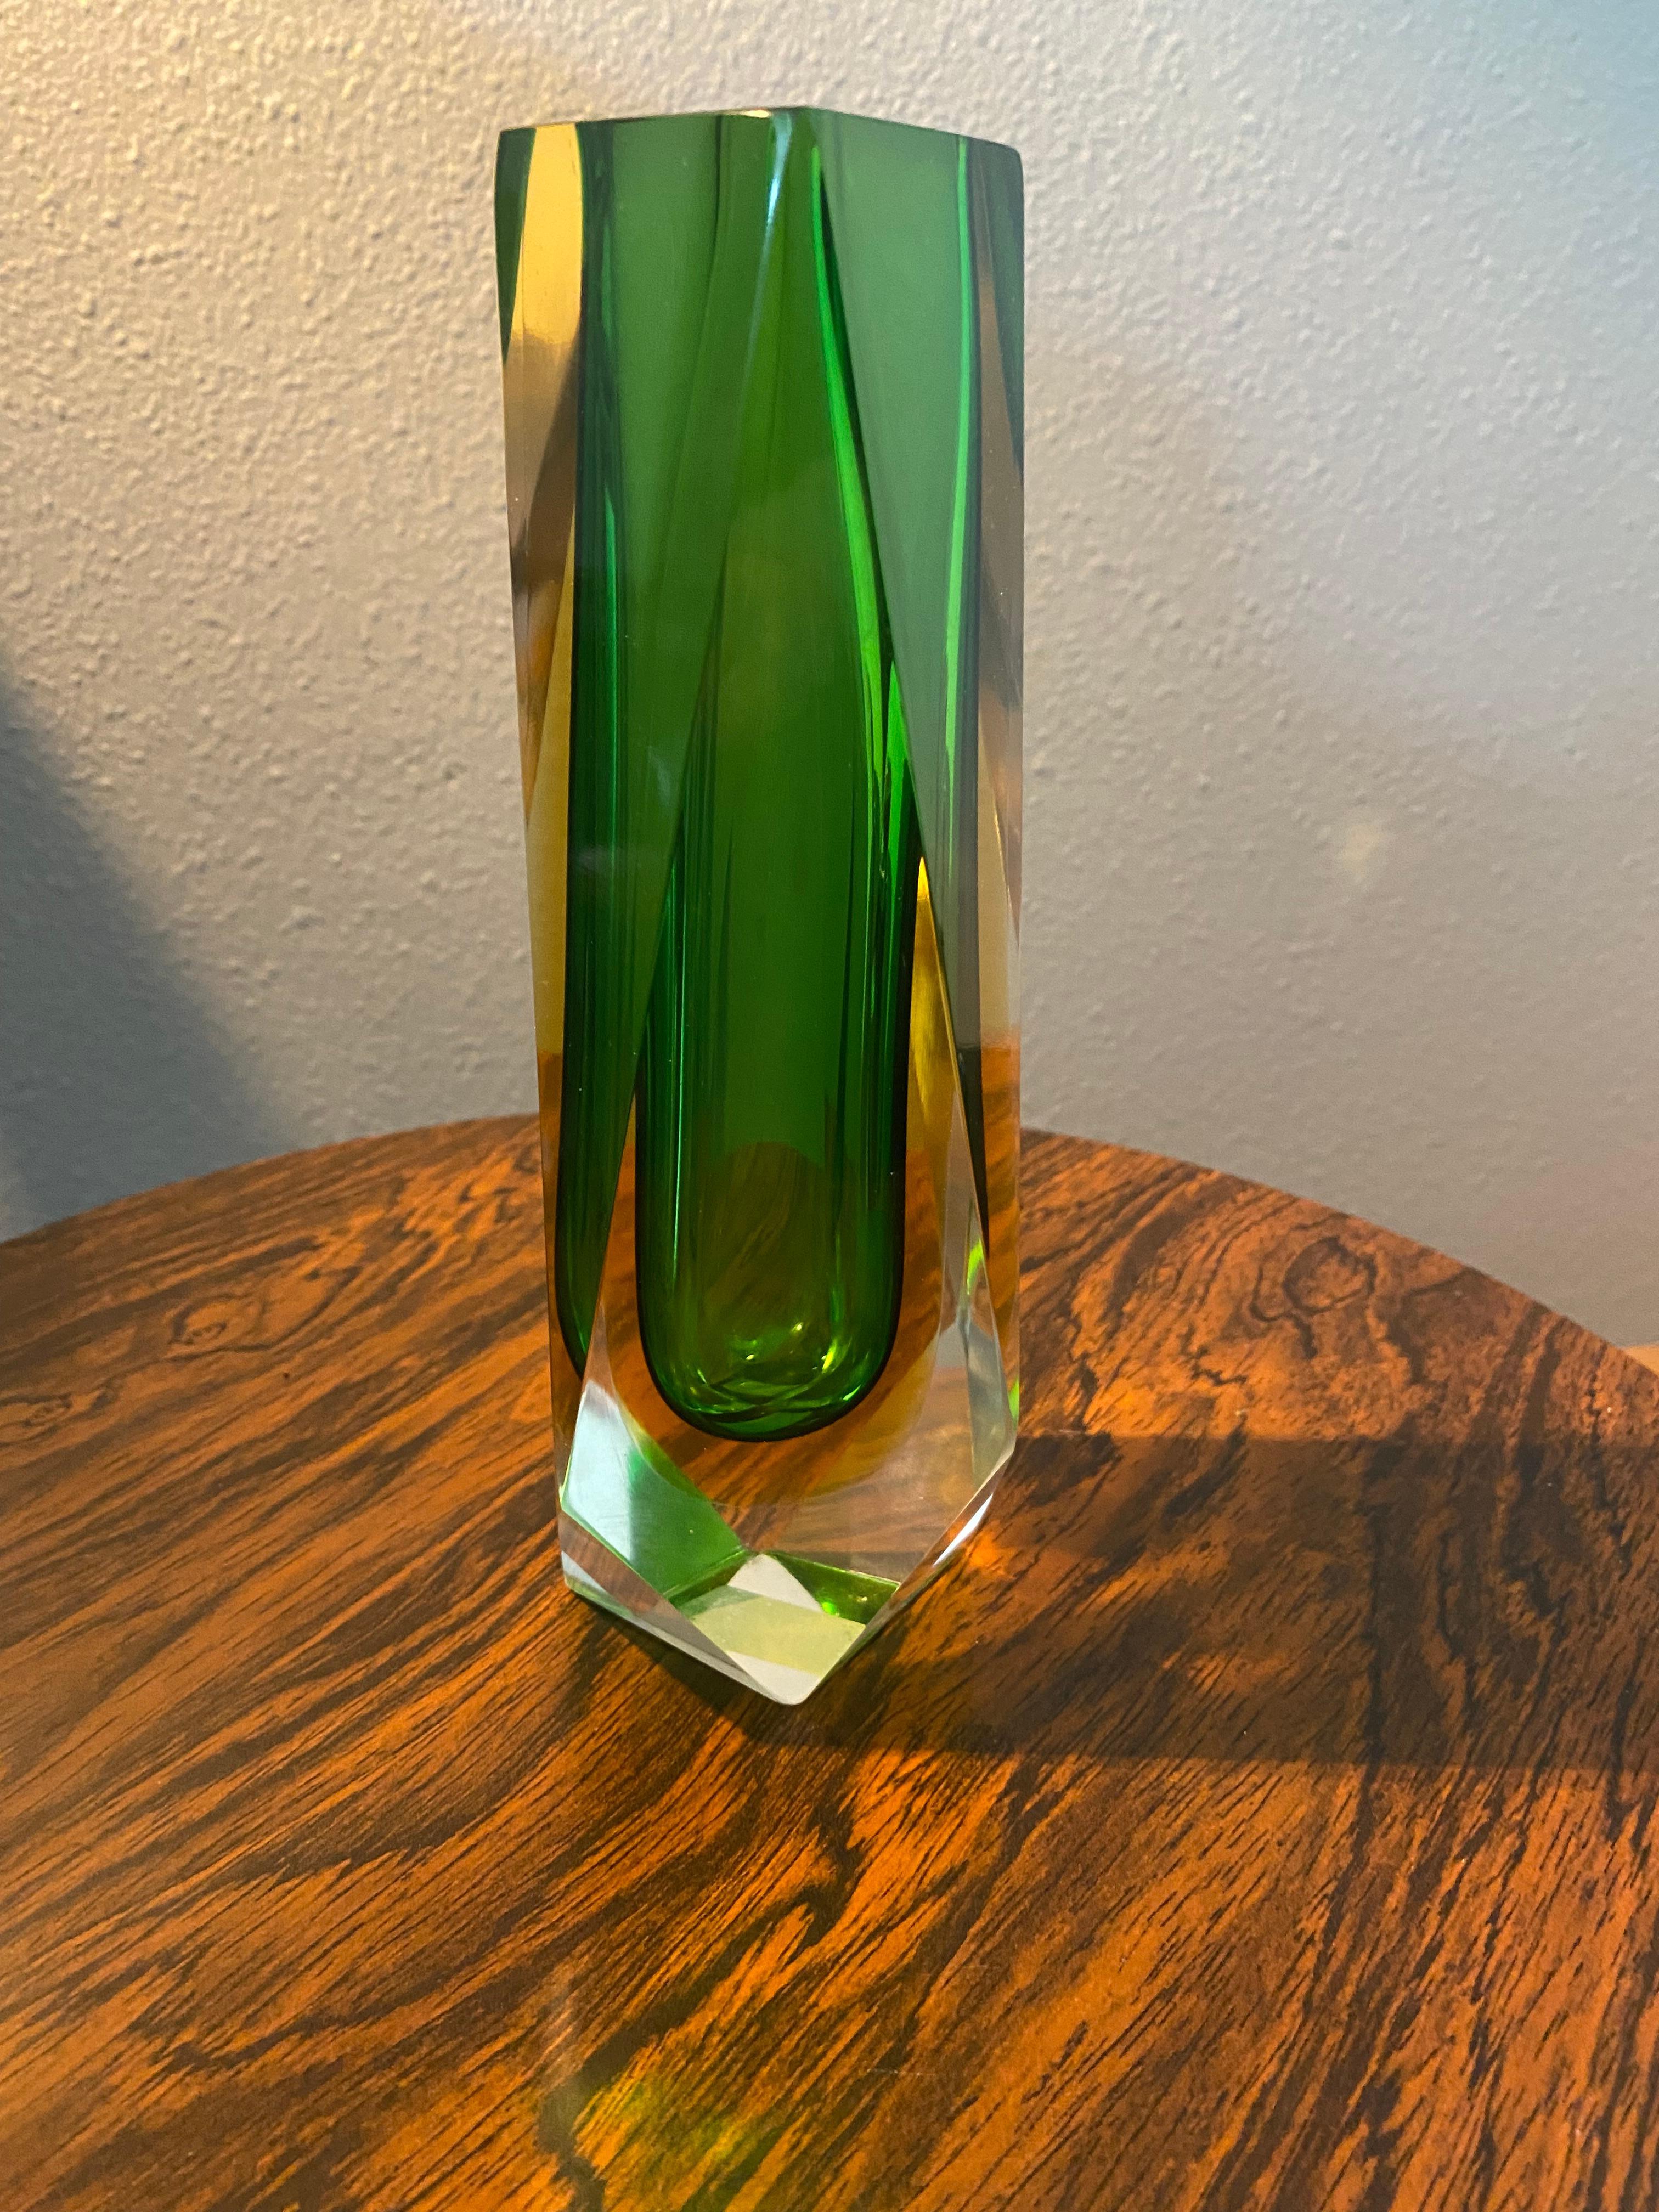 Magnifique vase vert/jaune en verre de Murano datant du milieu du siècle dernier. Réalisé selon la technique du verre Sommerso (immergé).